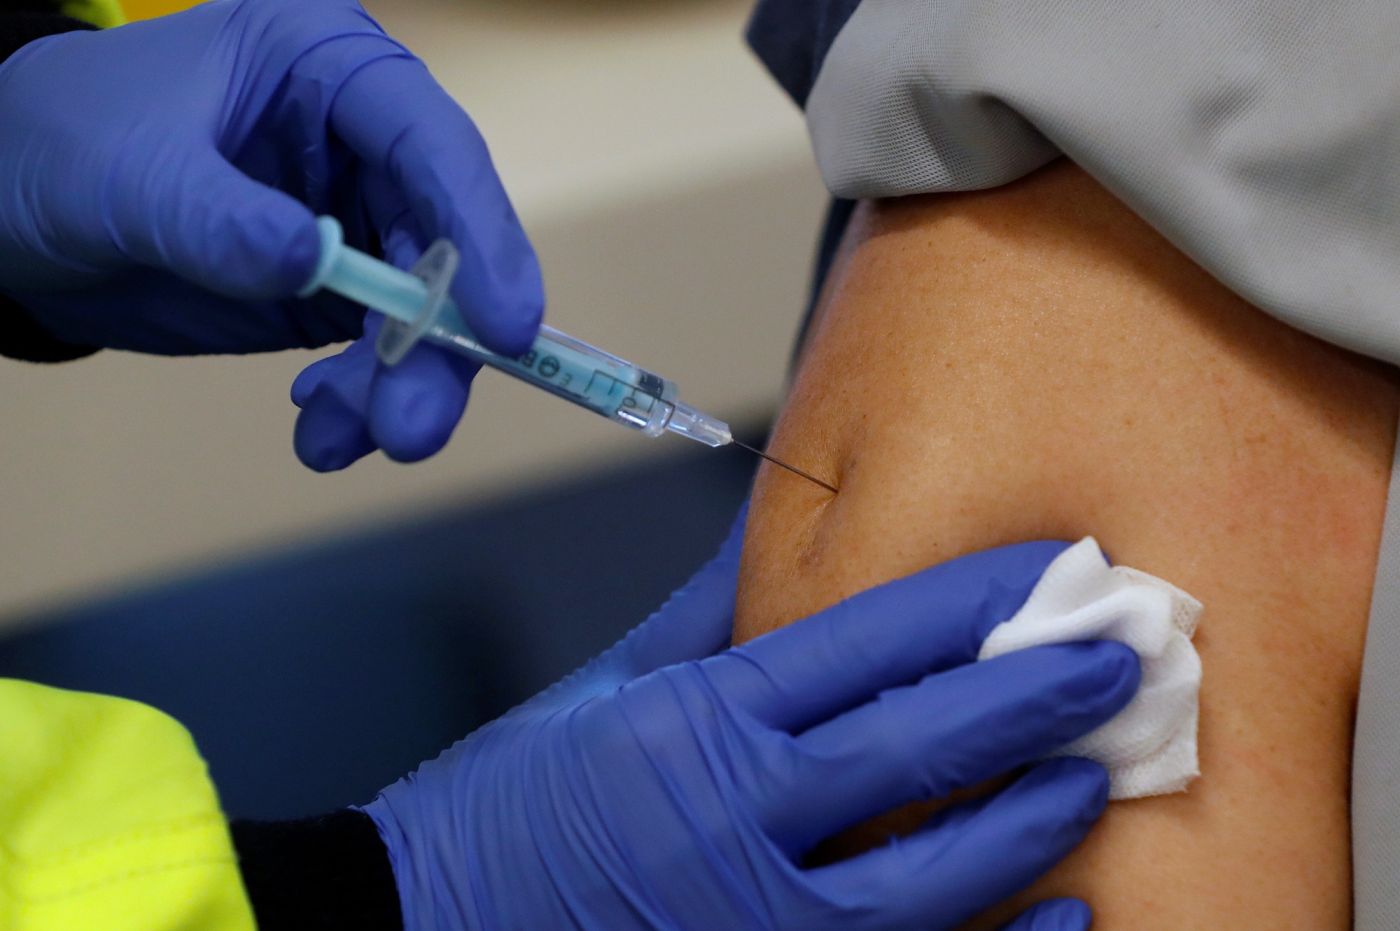 Βραζιλία: Τέταρτη δόση του εμβολίου κατά του κορωνοϊού για τους άνω των 50 ετών